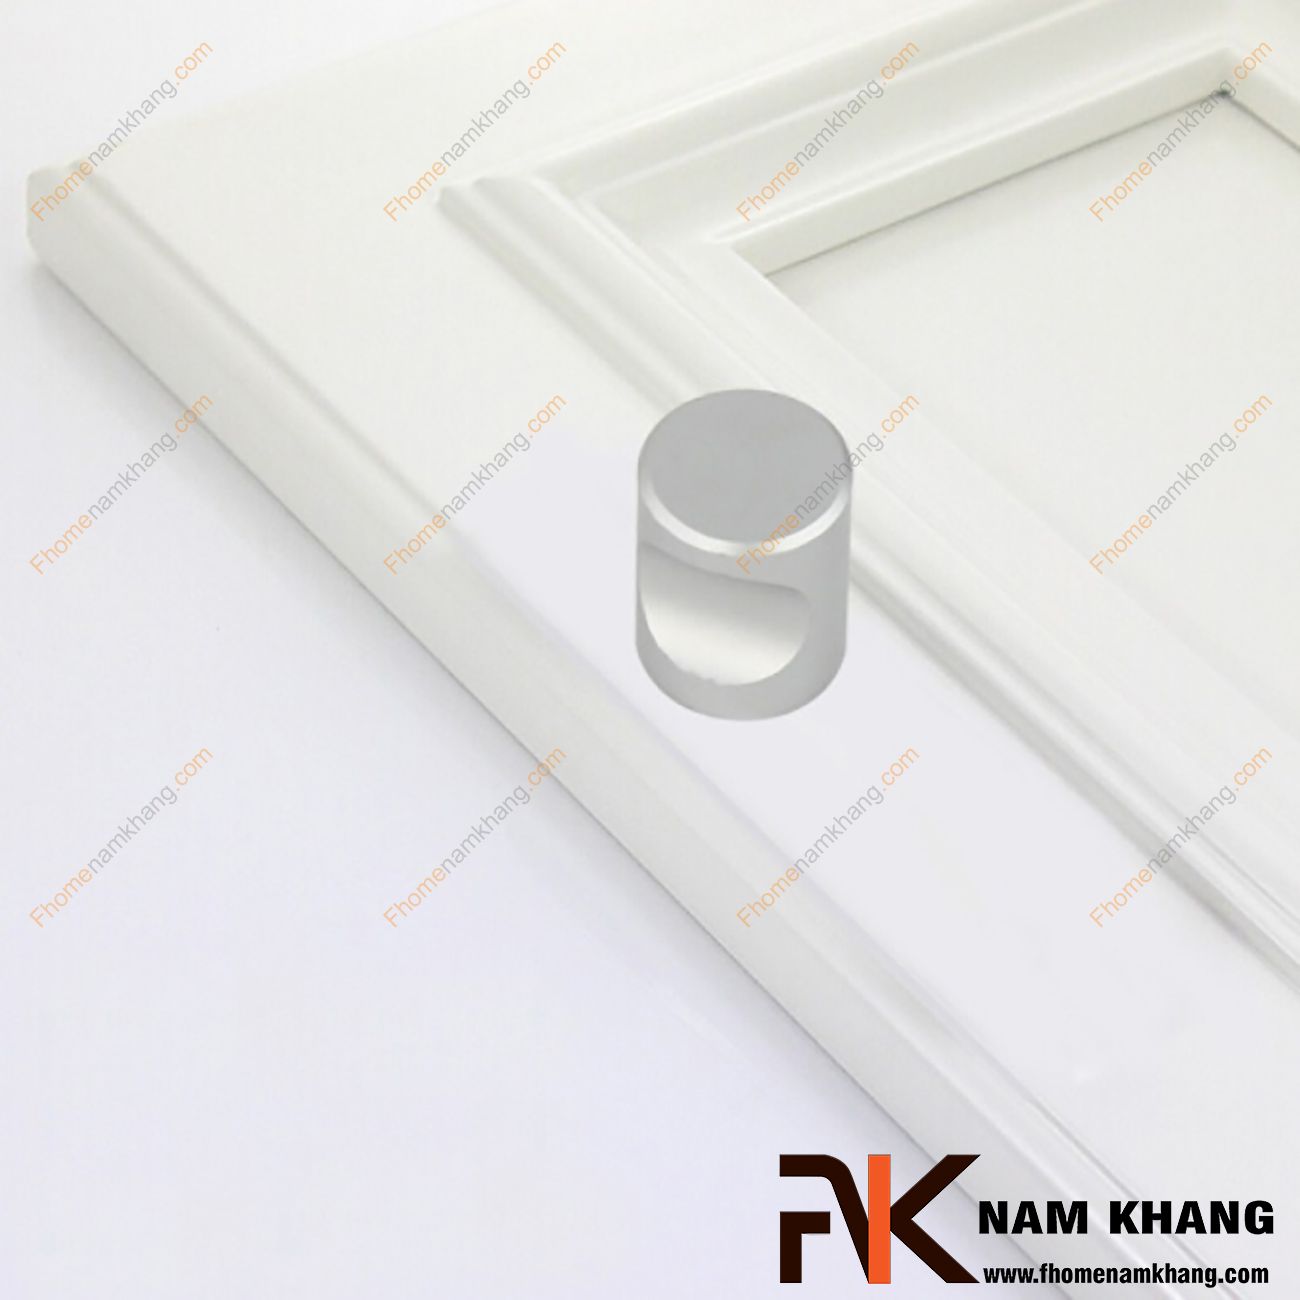 Núm nắm tủ nhôm NK057-N, sản phẩm phụ kiện tủ kệ nhỏ gọn được sử dụng rộng rãi trong sản xuất lắp đặt các dạng tủ kệ ngăn kéo và trong trang trí không gian nội ngoại thất.